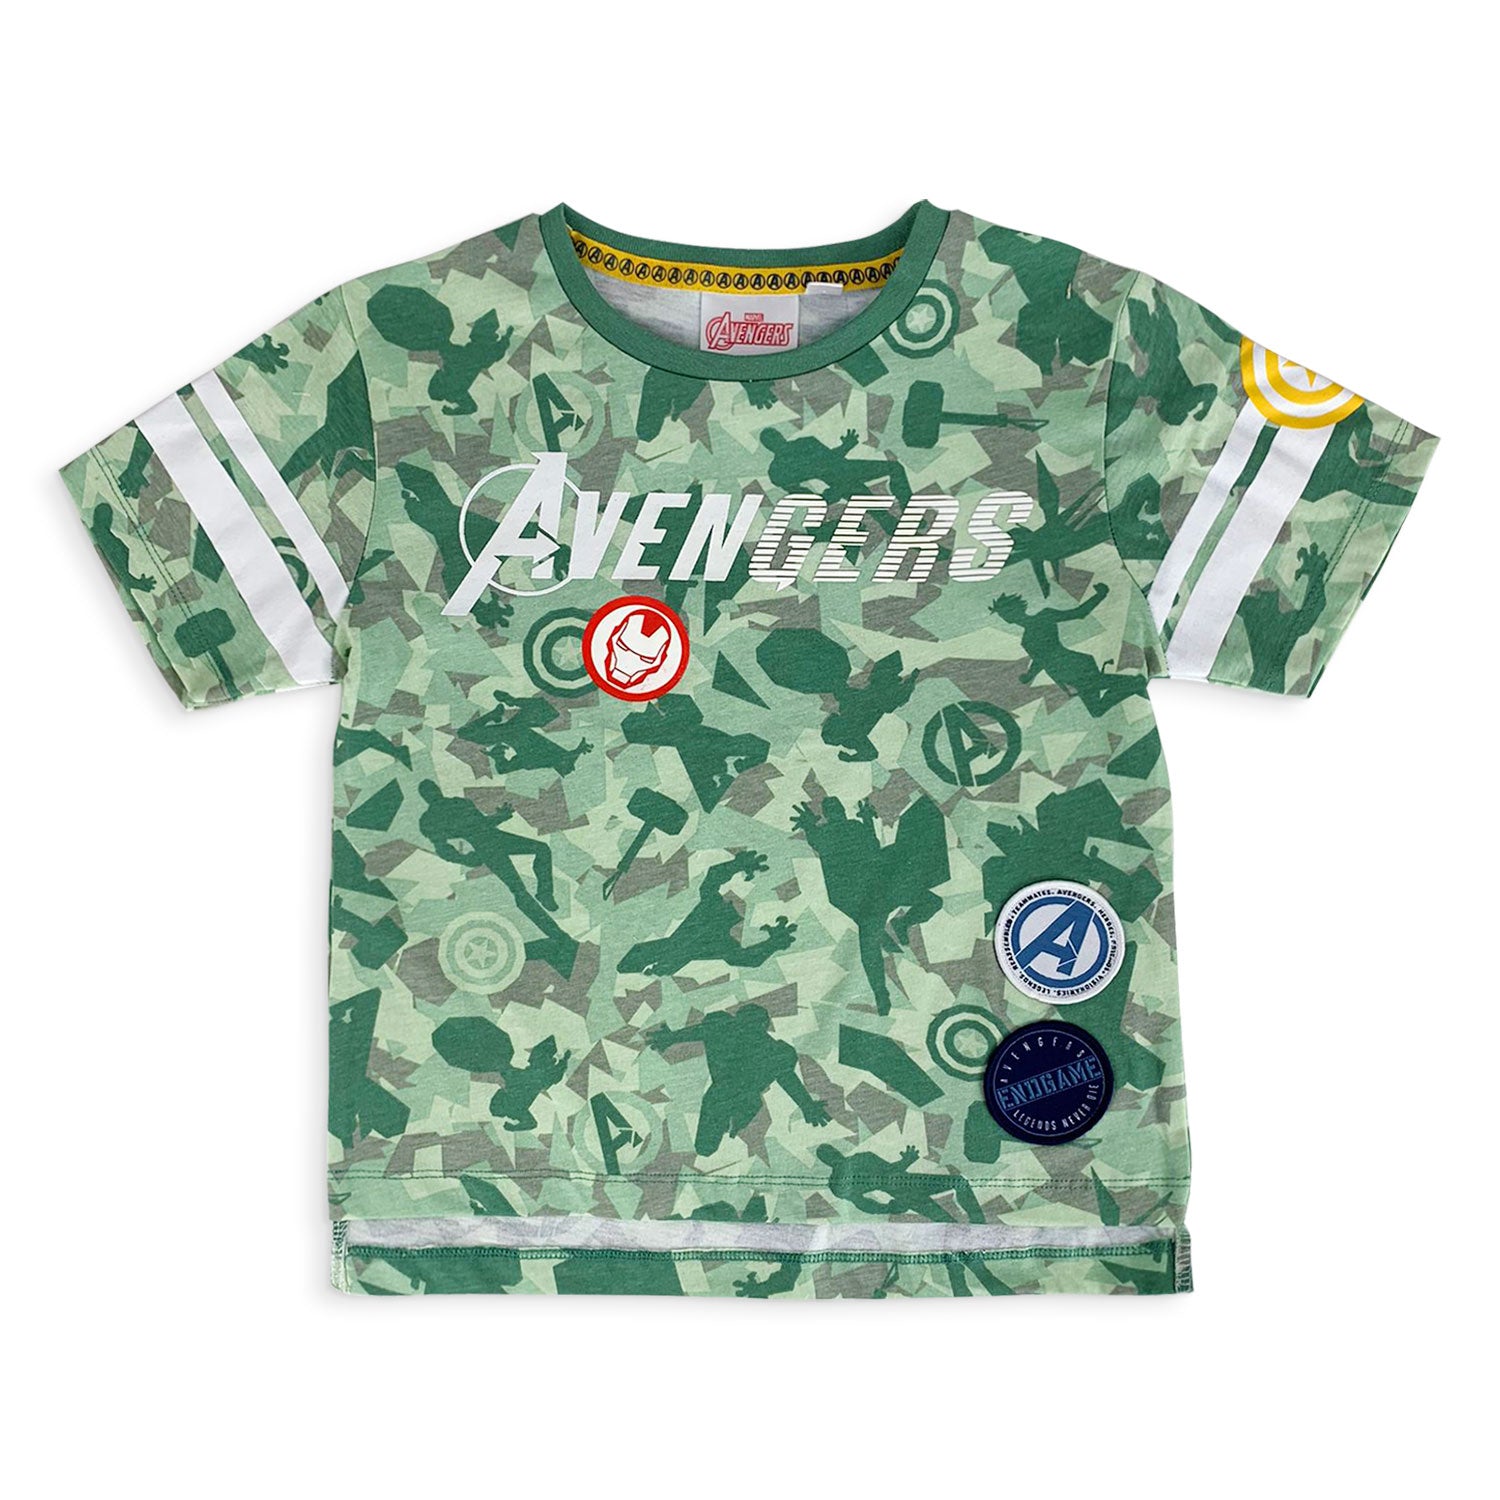 Maglietta Marvel Avengers t-shirt bambino mezze maniche in cotone estivo 5185